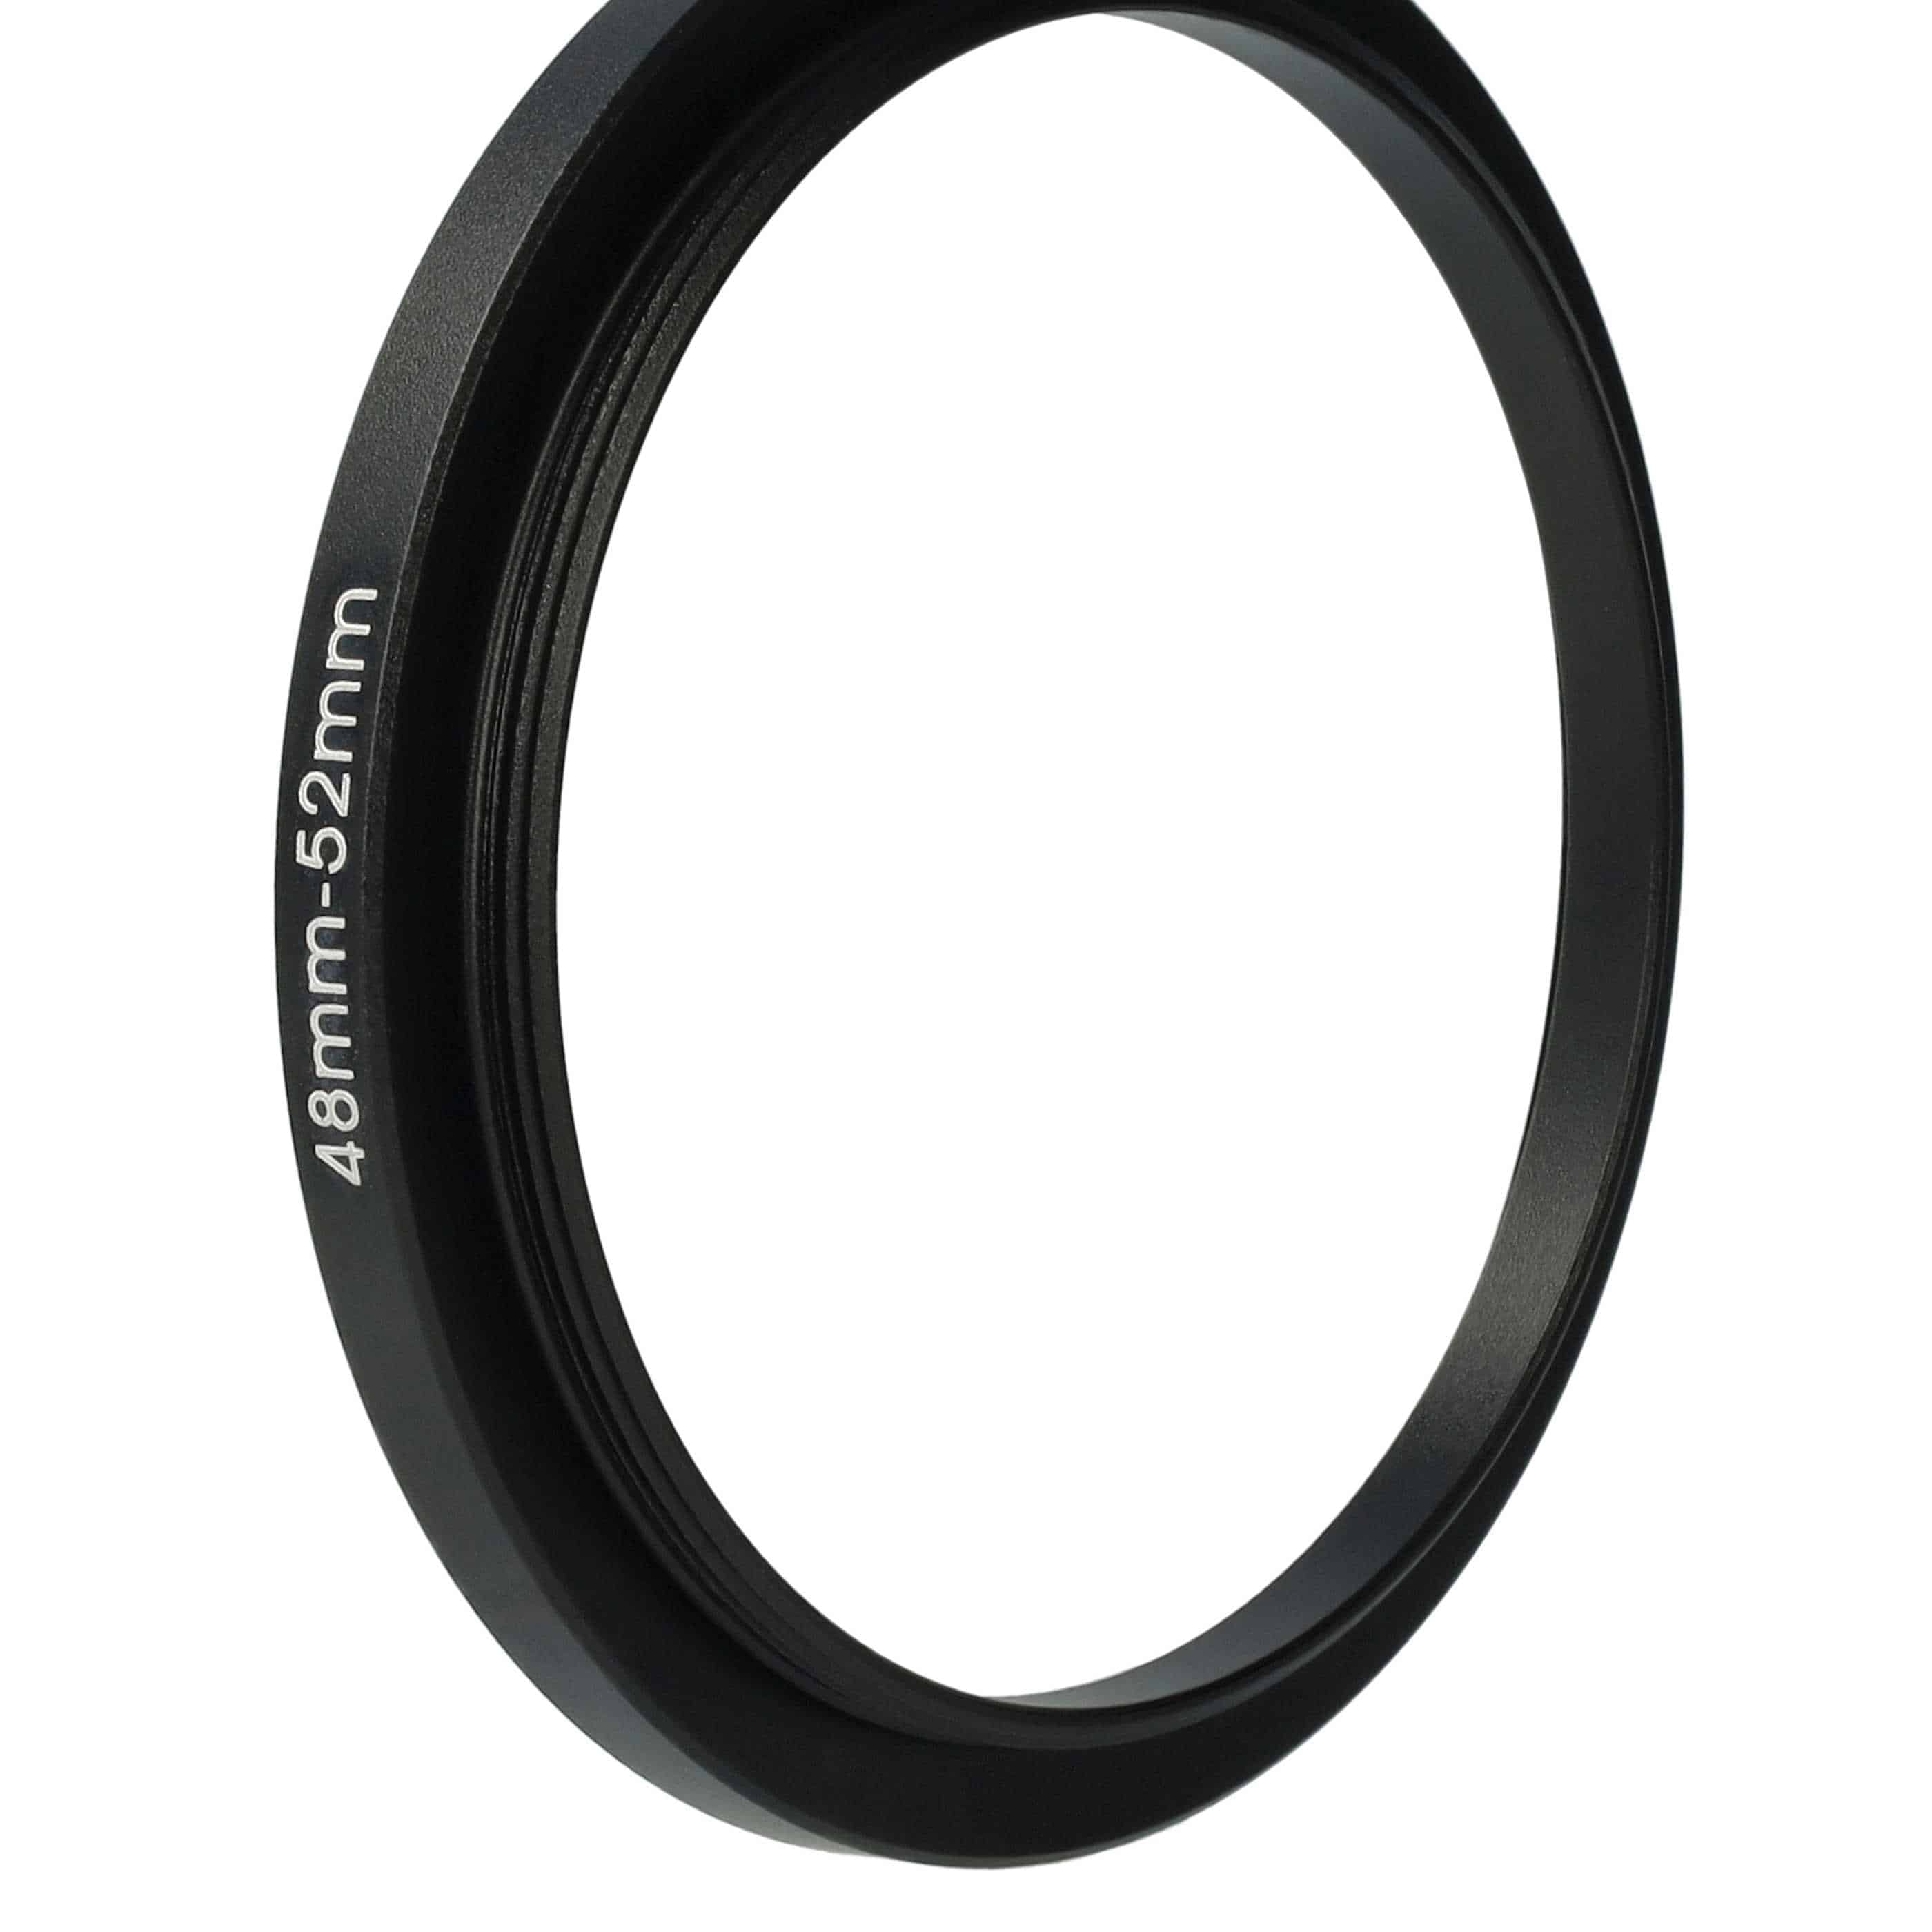 Step-Up-Ring Adapter 48 mm auf 52 mm passend für diverse Kamera-Objektive - Filteradapter